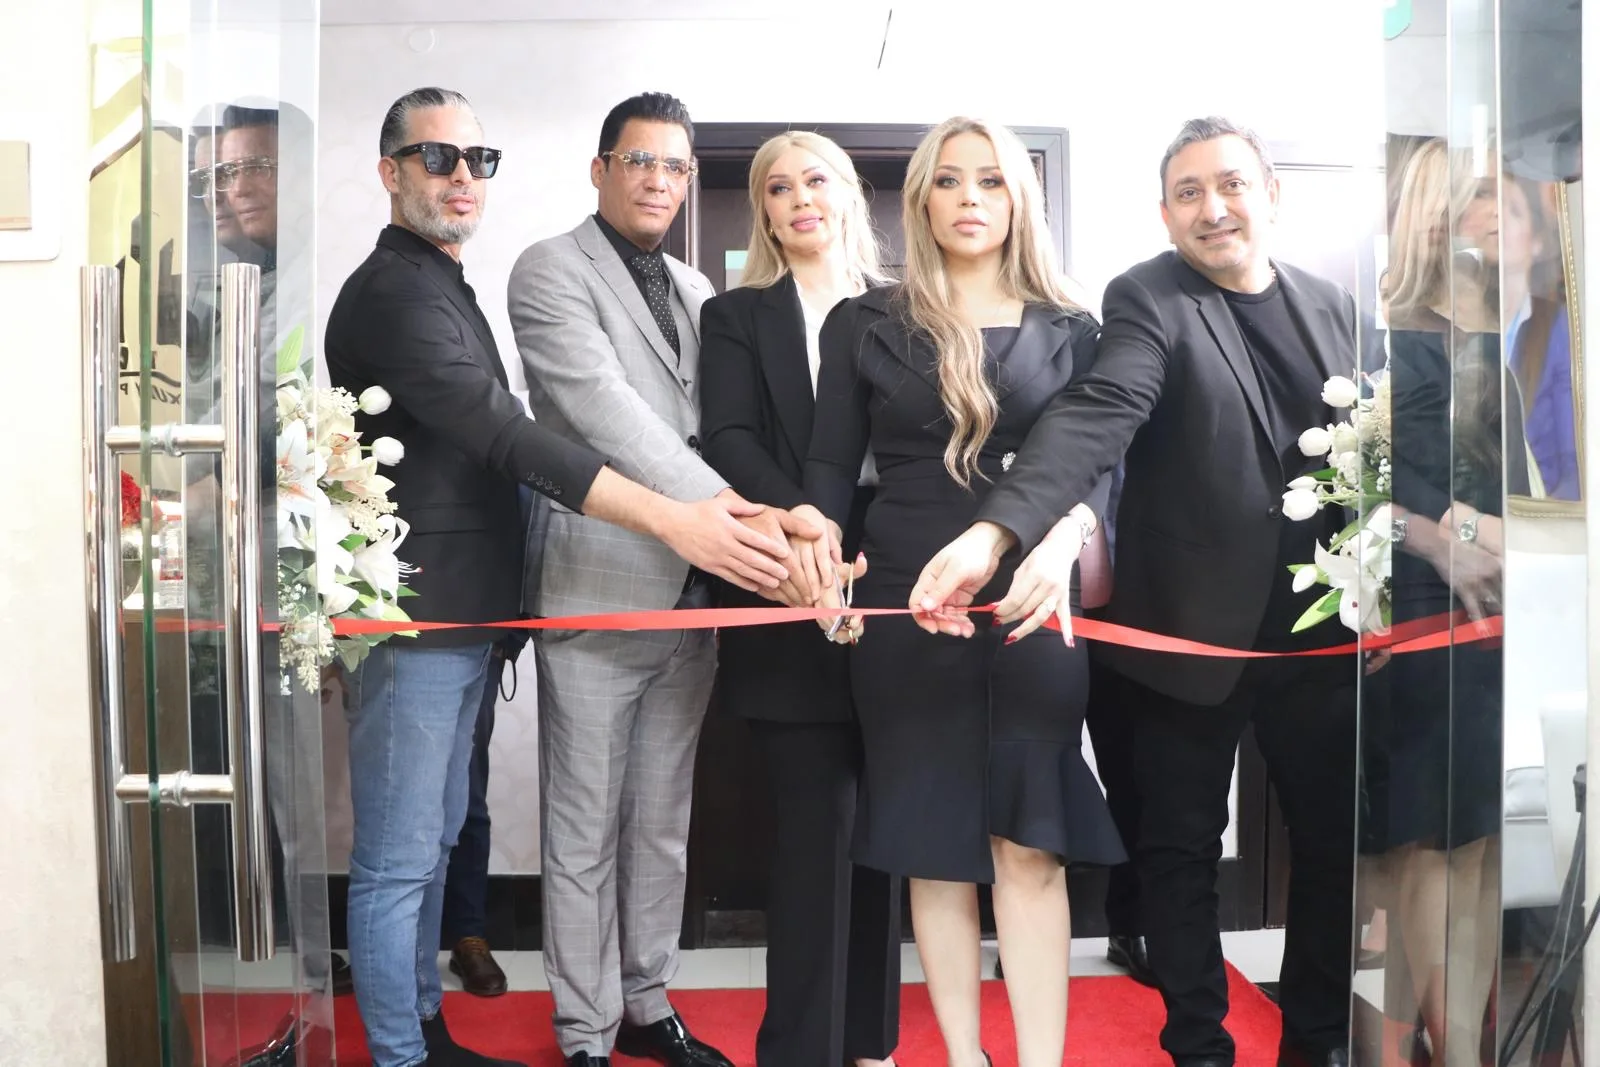 أسماء بن سعيد تُثري قطاع العقارات في دبي بافتتاح فرع جديد لشركة "Marawa Real Estate" 